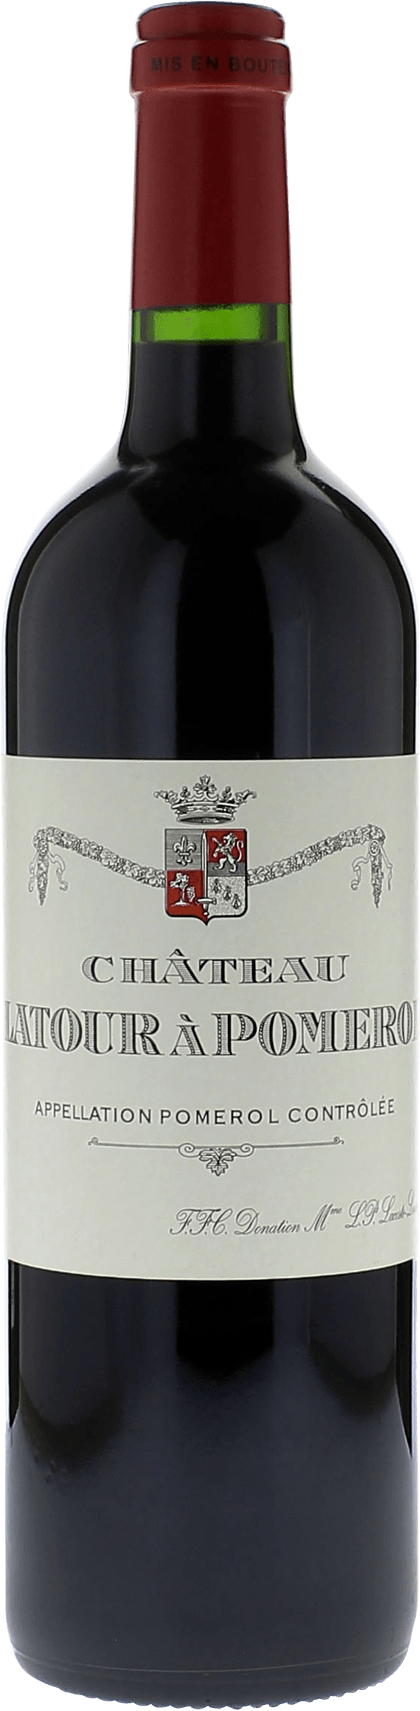 Latour  pomerol 1982  Pomerol, Bordeaux rouge